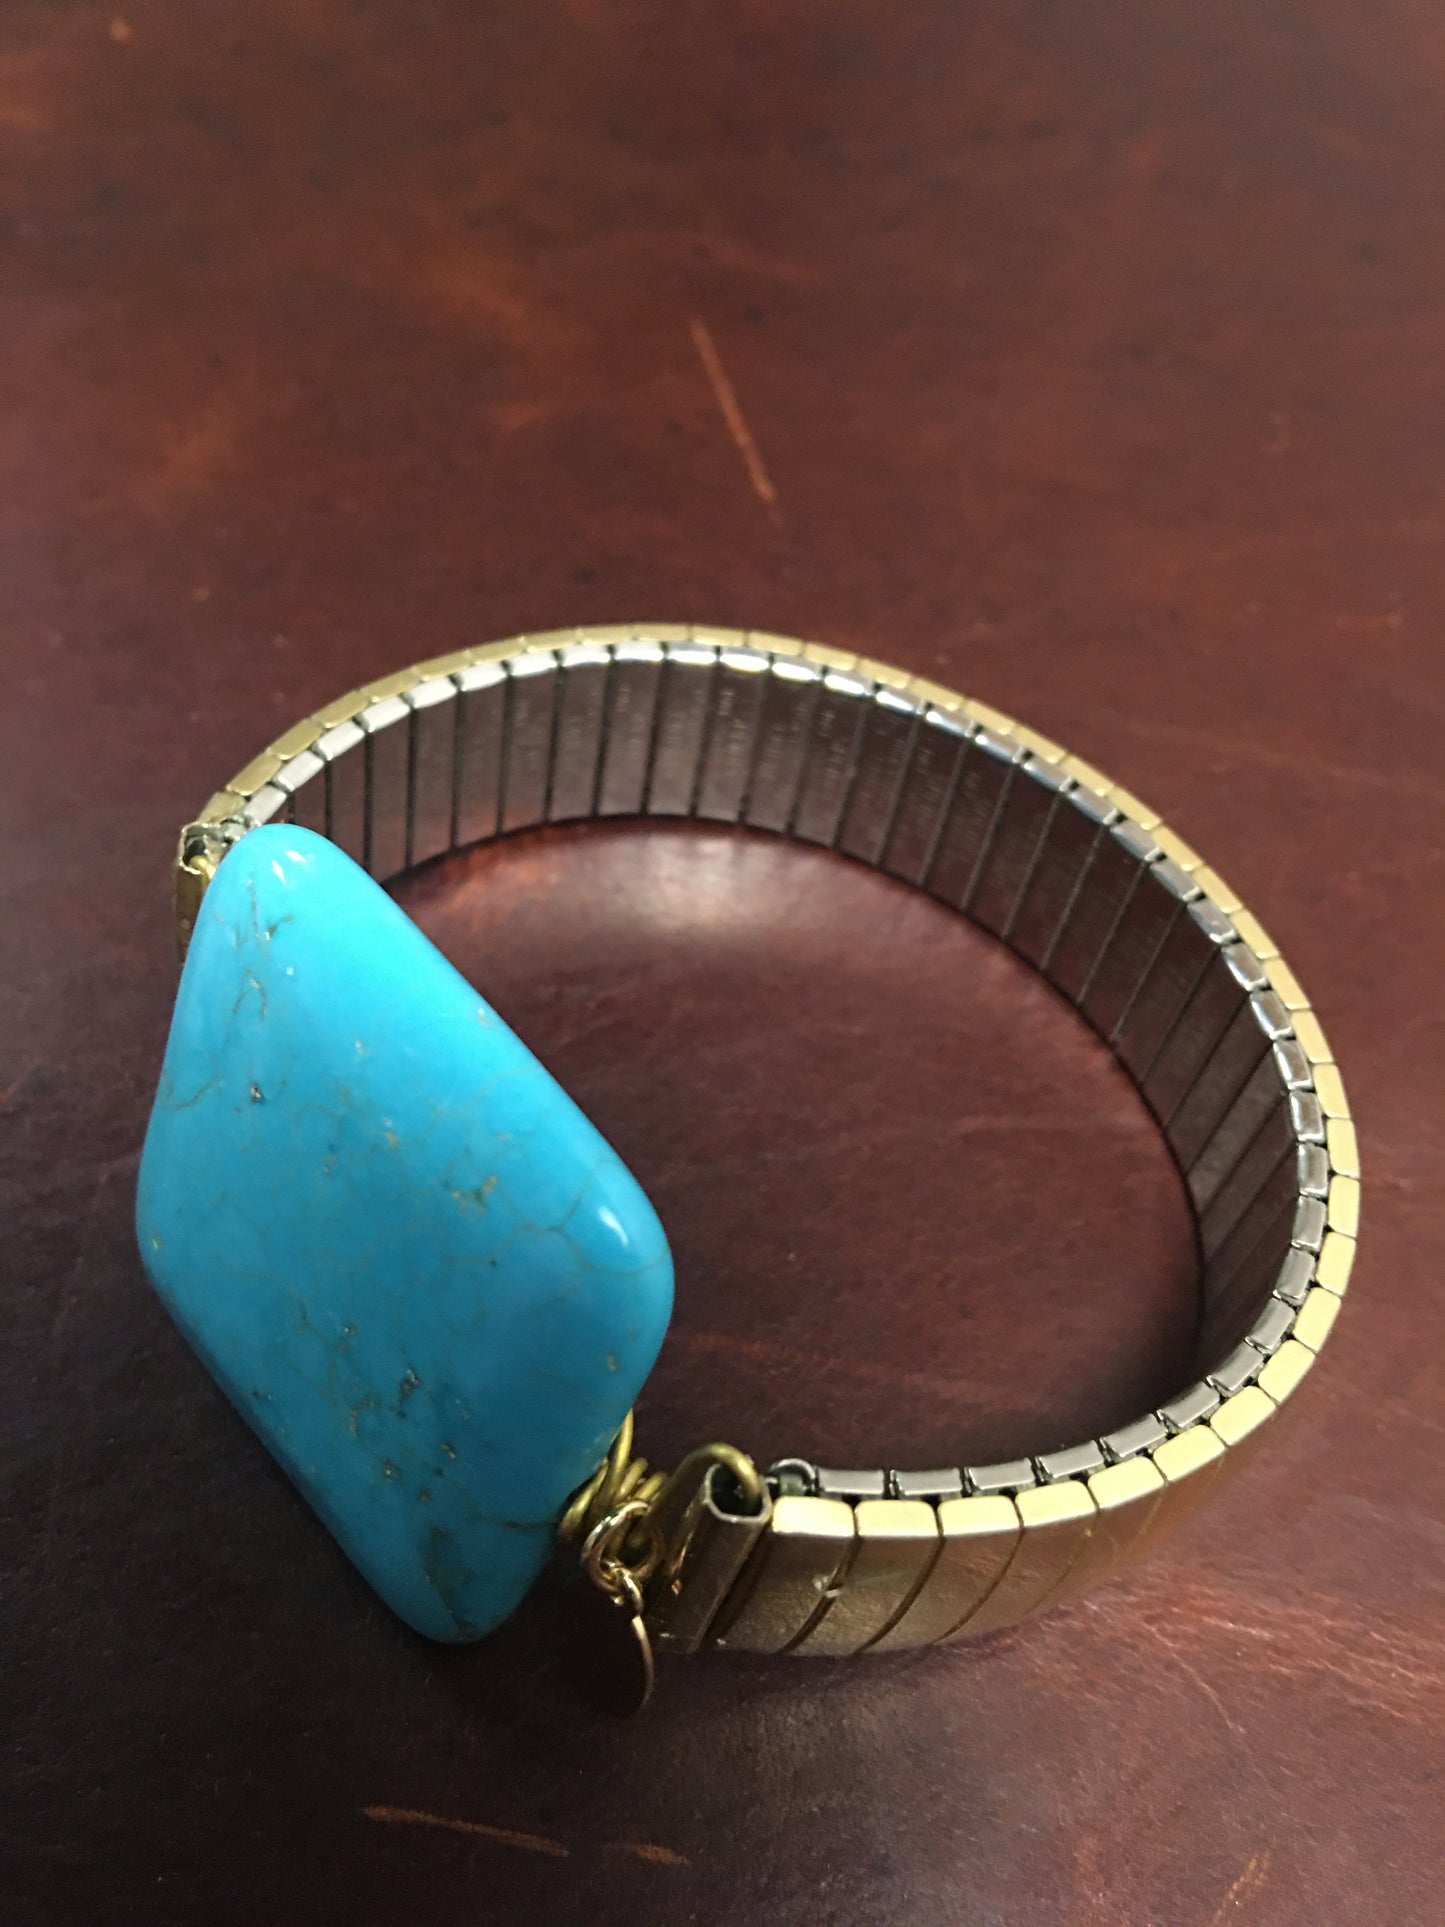 LS Upcycled Vintage Watch Band & Turquoise Stone Bracelet